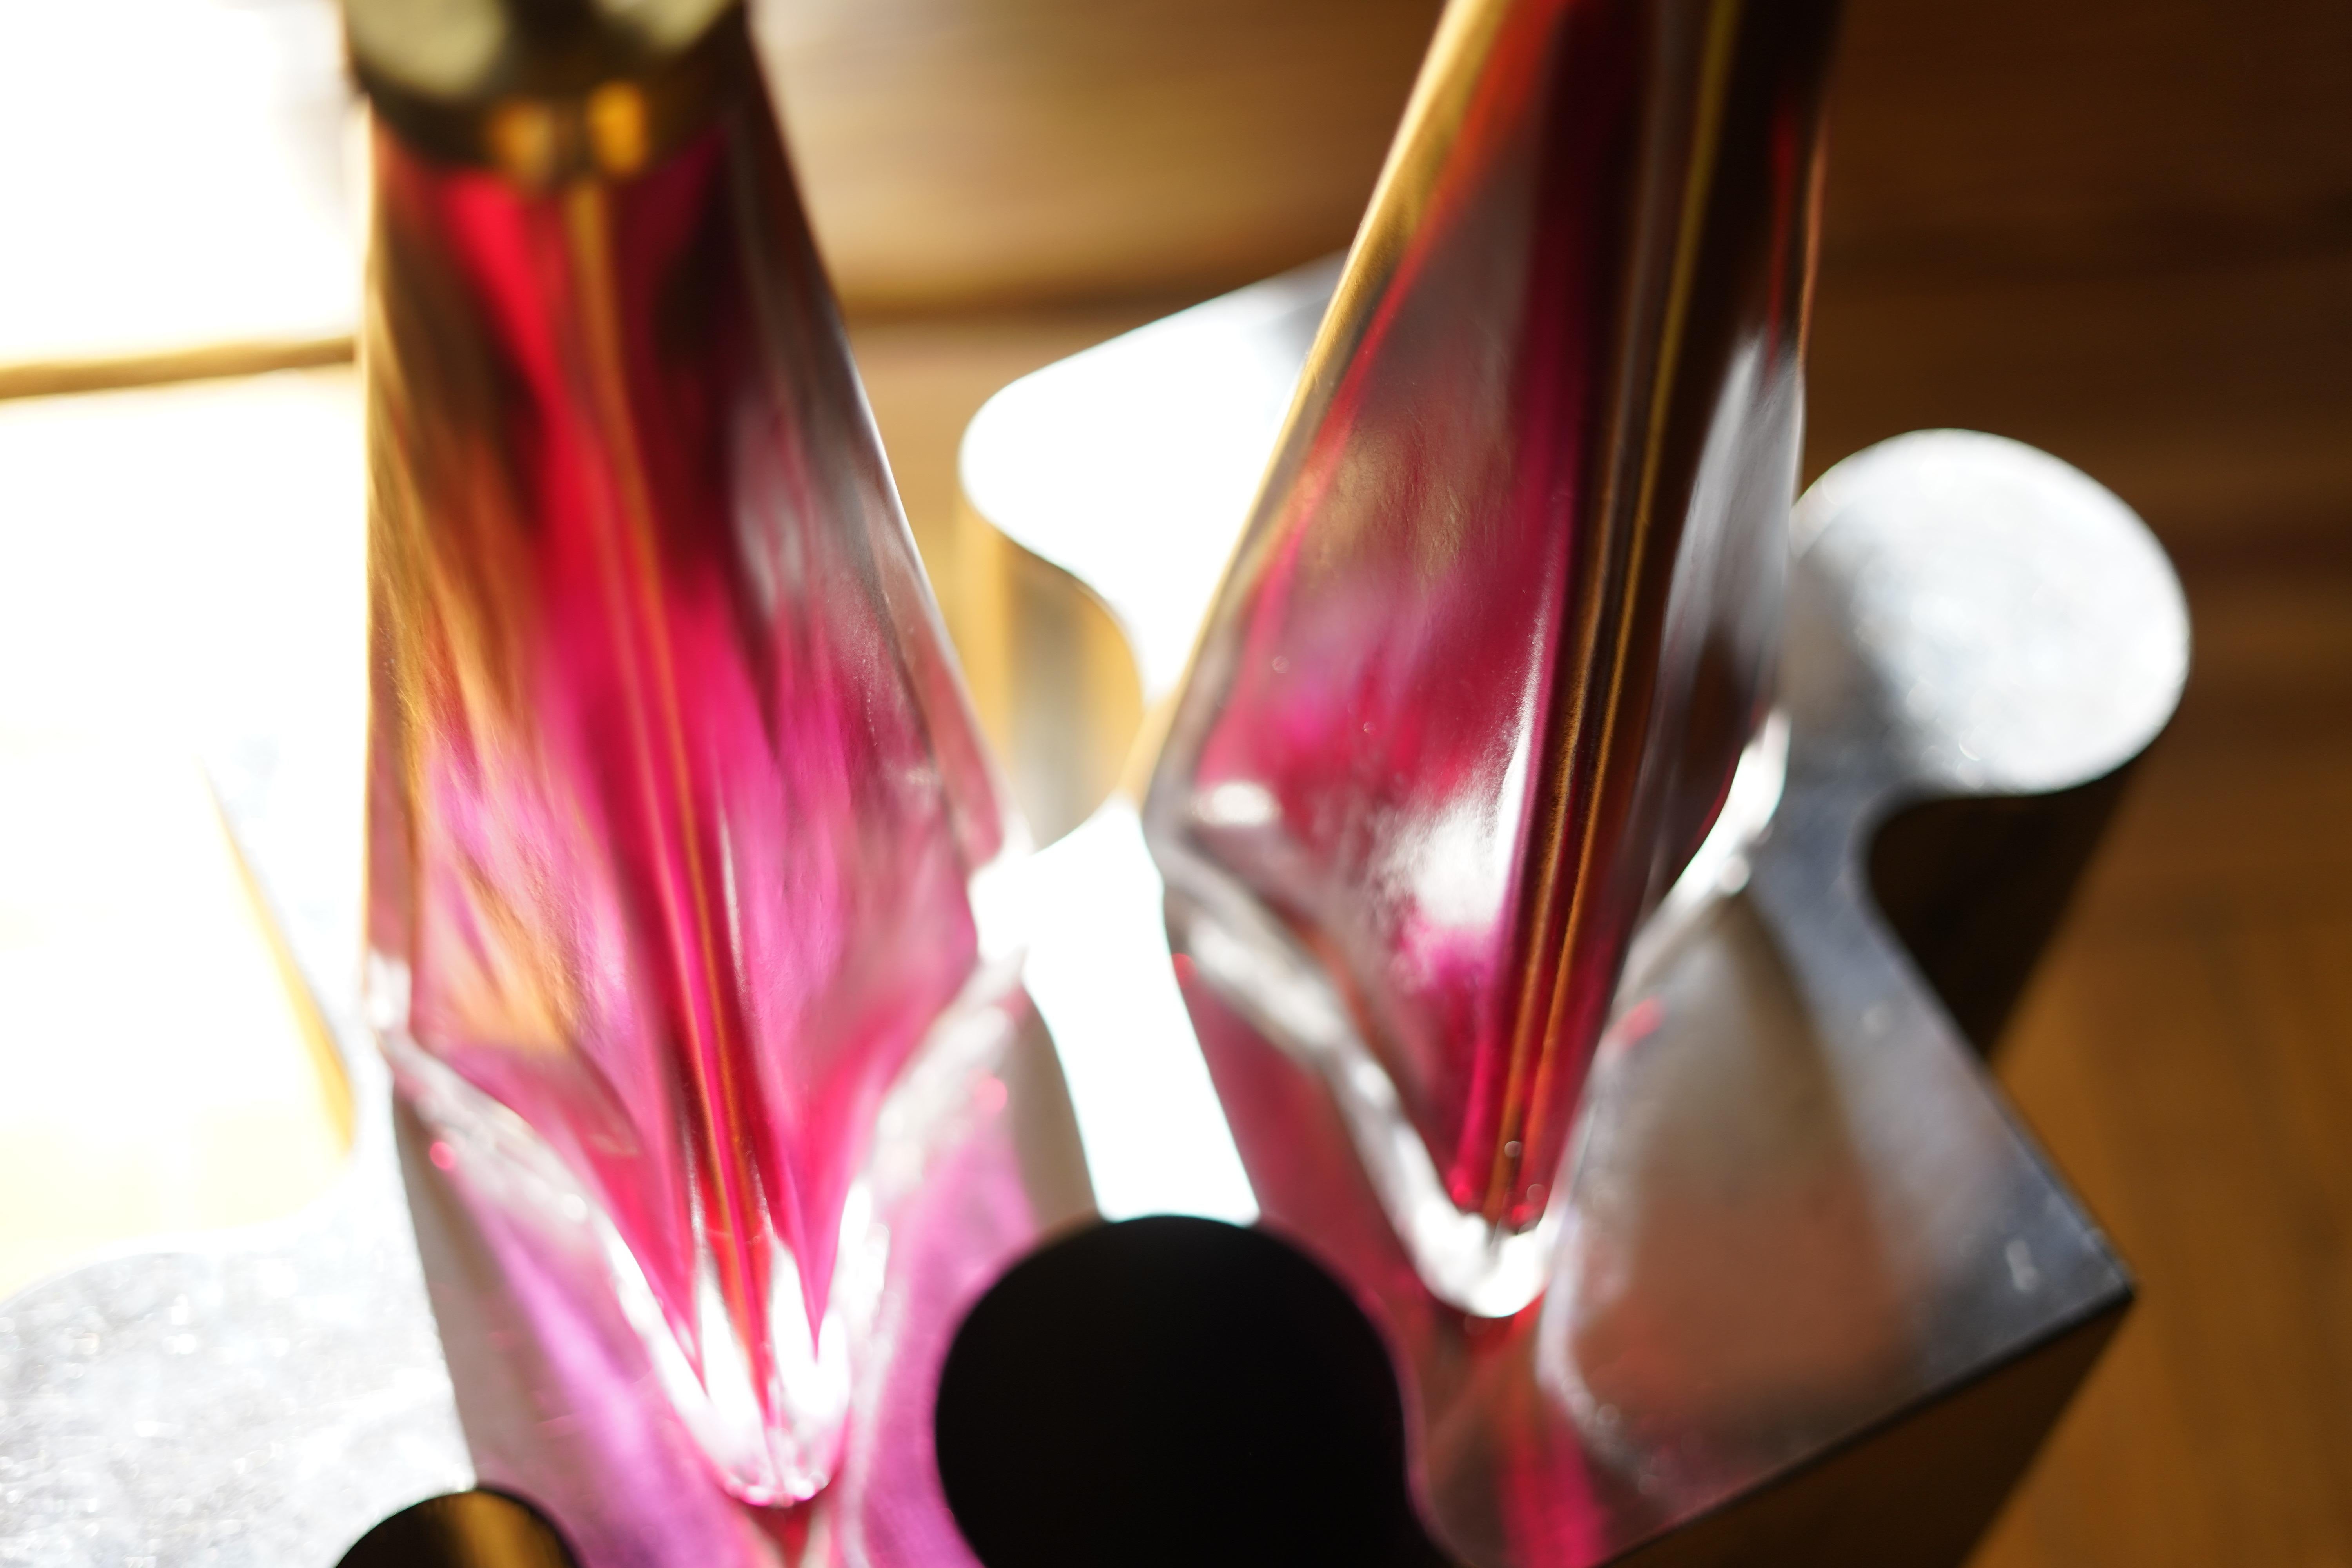 Rubinrotes Paar dreieckiger Kristalllampen, umhüllt von einer Schicht aus mattem Klarglas mit Messingbeschlag Von Carl Fagerlund für Orrefors 1960.
Signiert auf der Unterseite.

Rewired for the US.

Die Lampenschirme sind nicht enthalten.